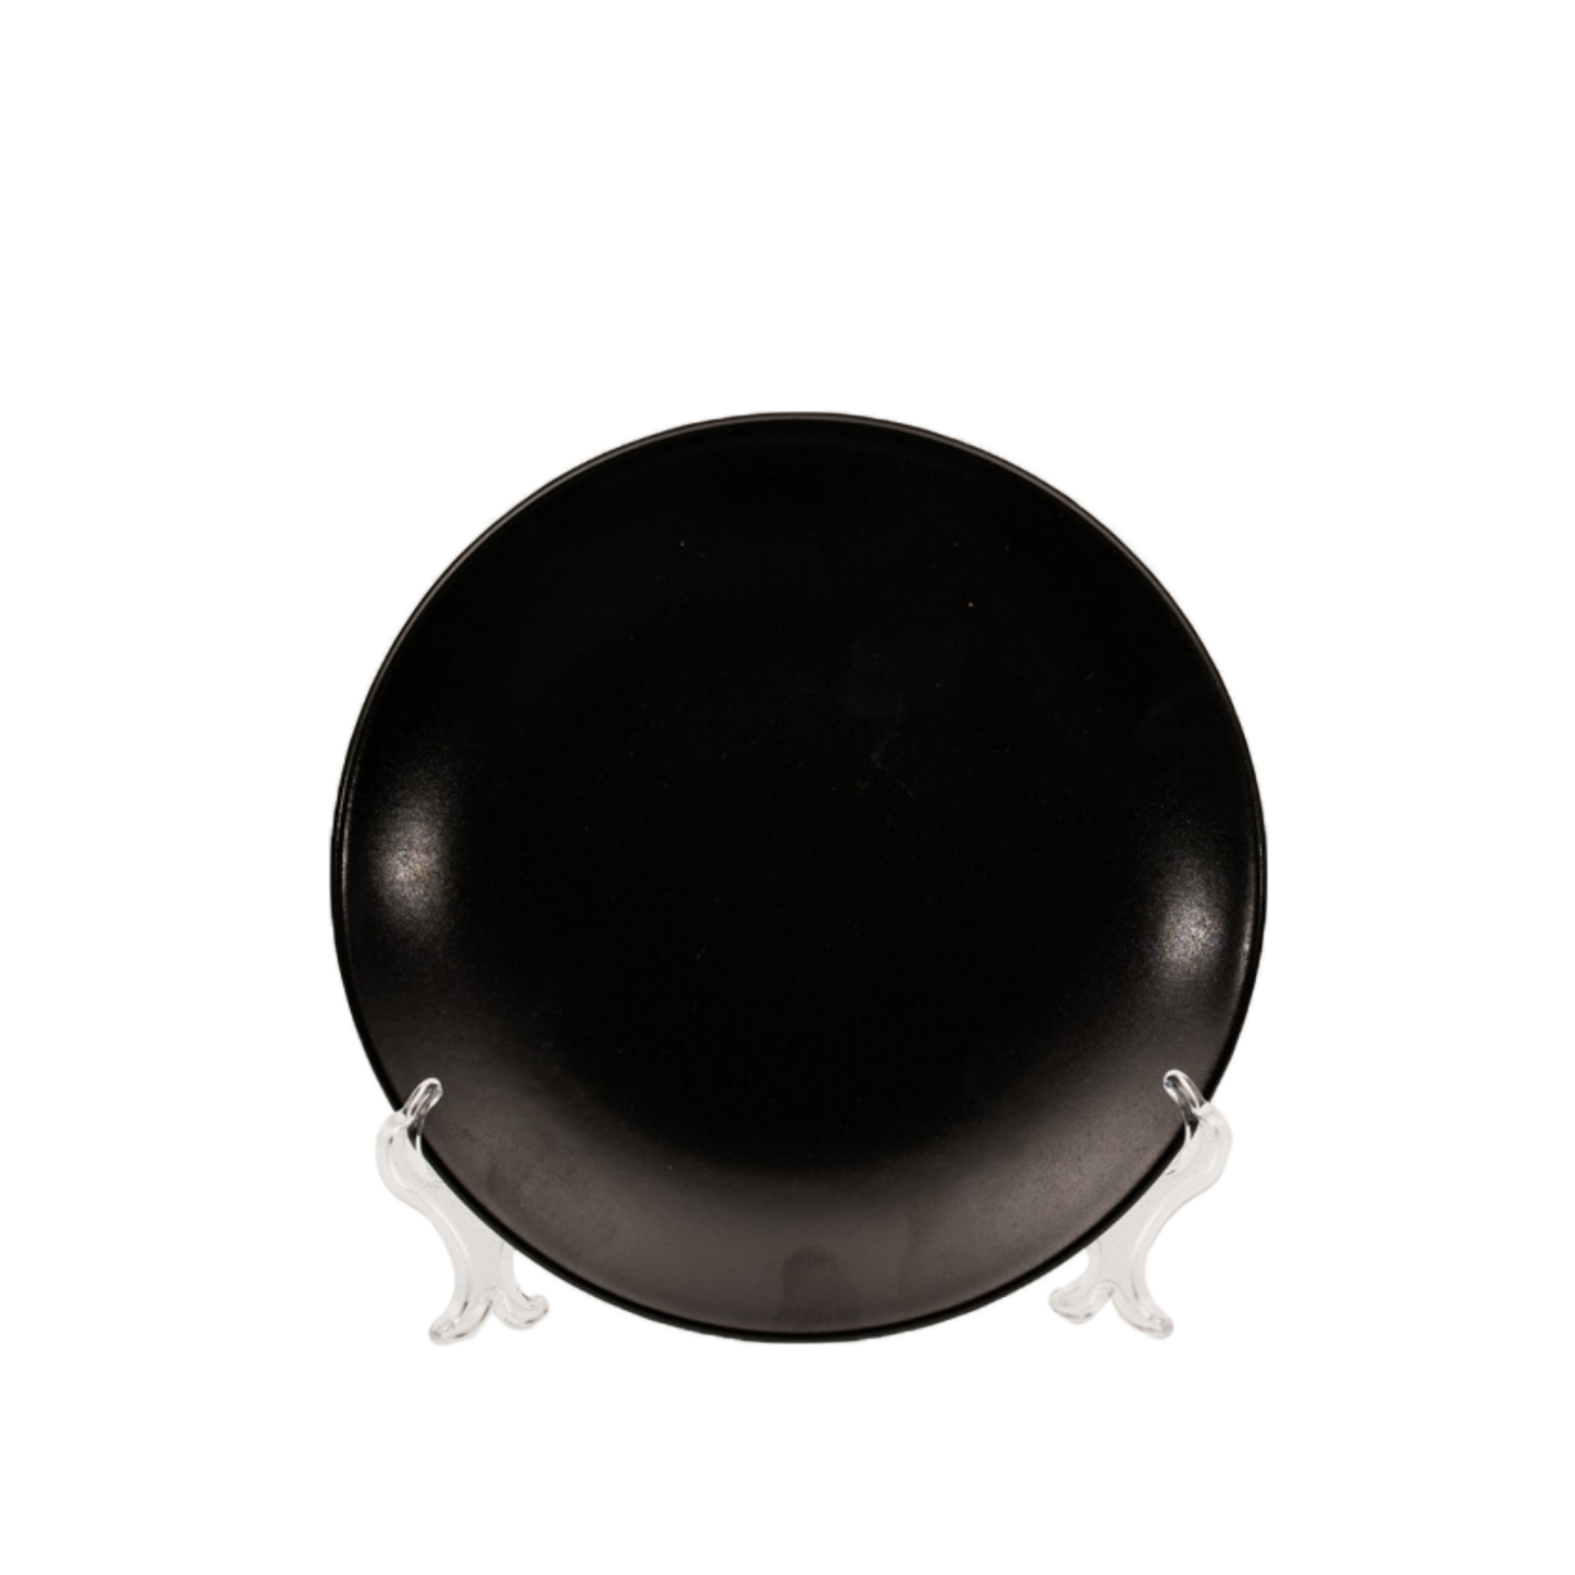 FRUIT Plate Black Monaco cm 20 (35 each container)